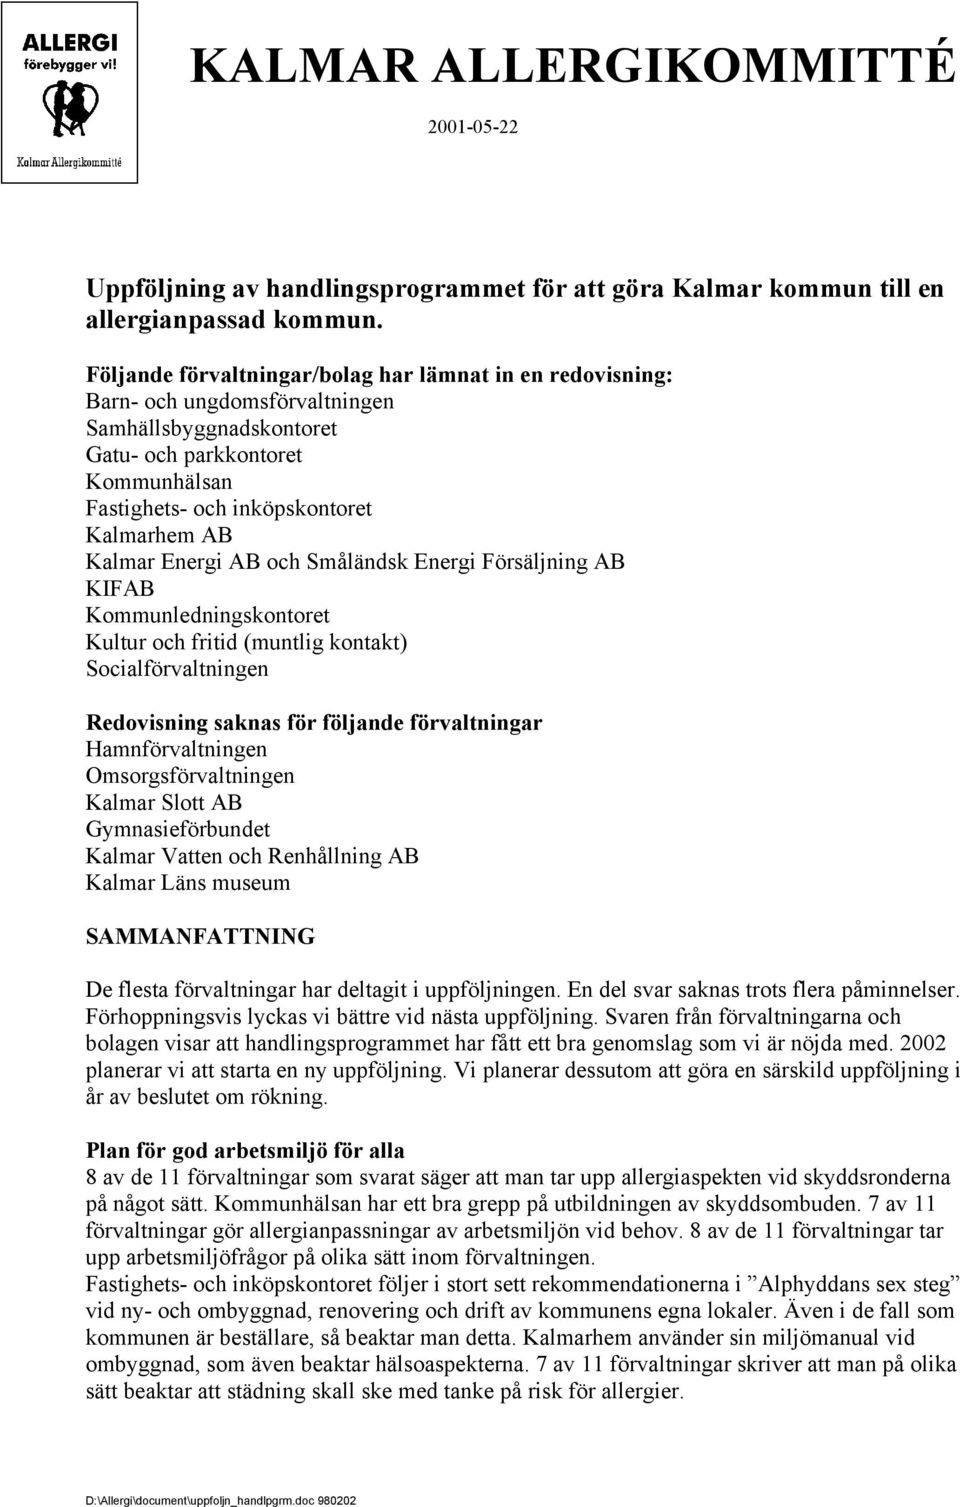 Kalmar Energi AB och Småländsk Energi Försäljning AB KIFAB Kommunledningskontoret Kultur och fritid (muntlig kontakt) Socialförvaltningen Redovisning saknas för följande förvaltningar